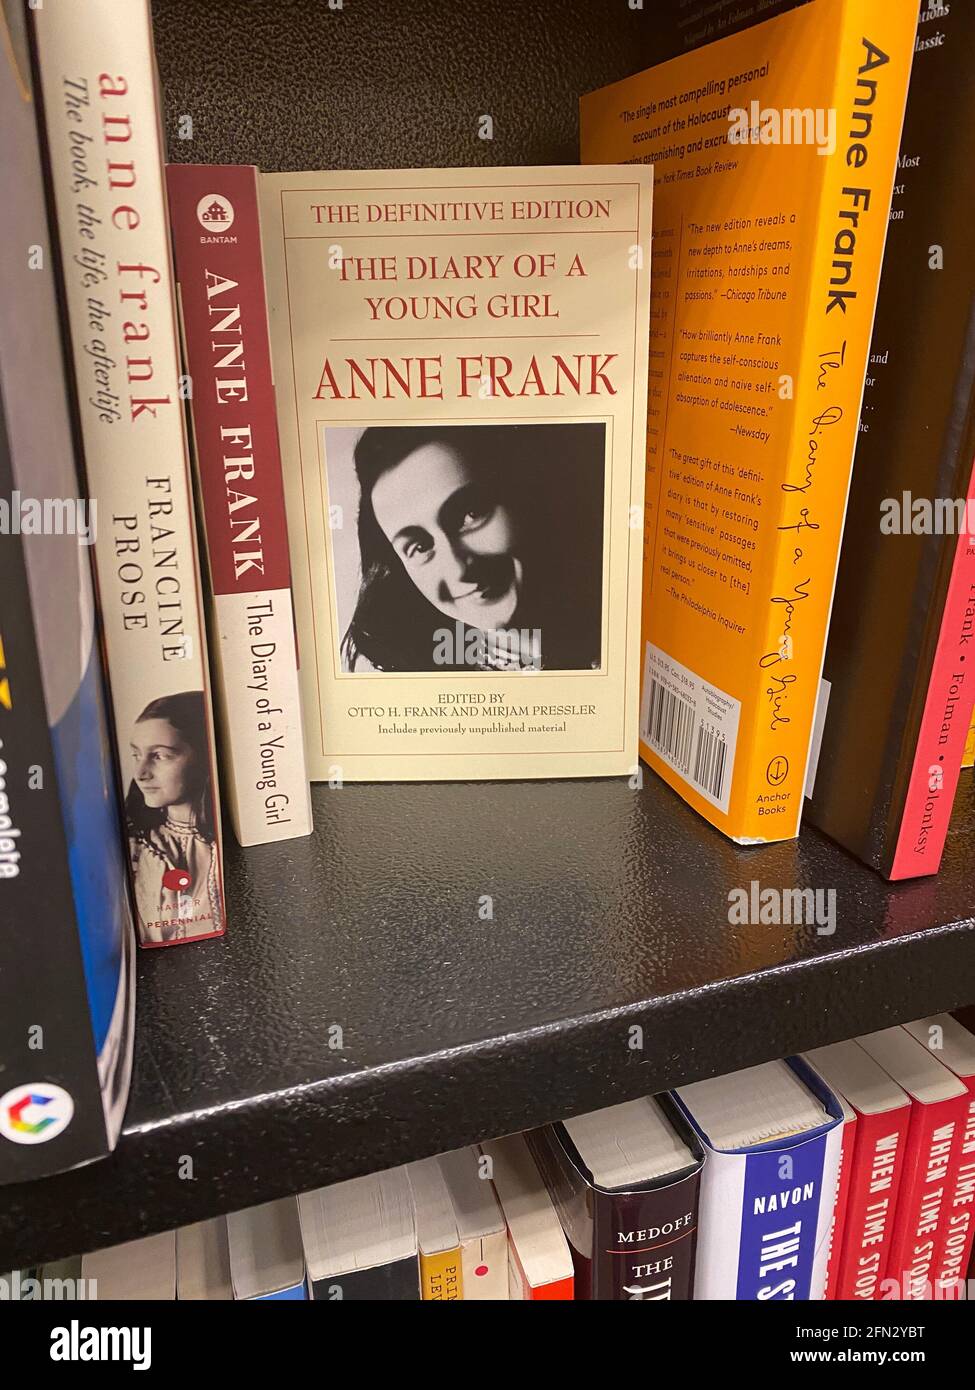 Il Diario di Anne Frank e libri sulla sua vita sono ancora venditori popolari presso i negozi di libri. New York. Foto Stock